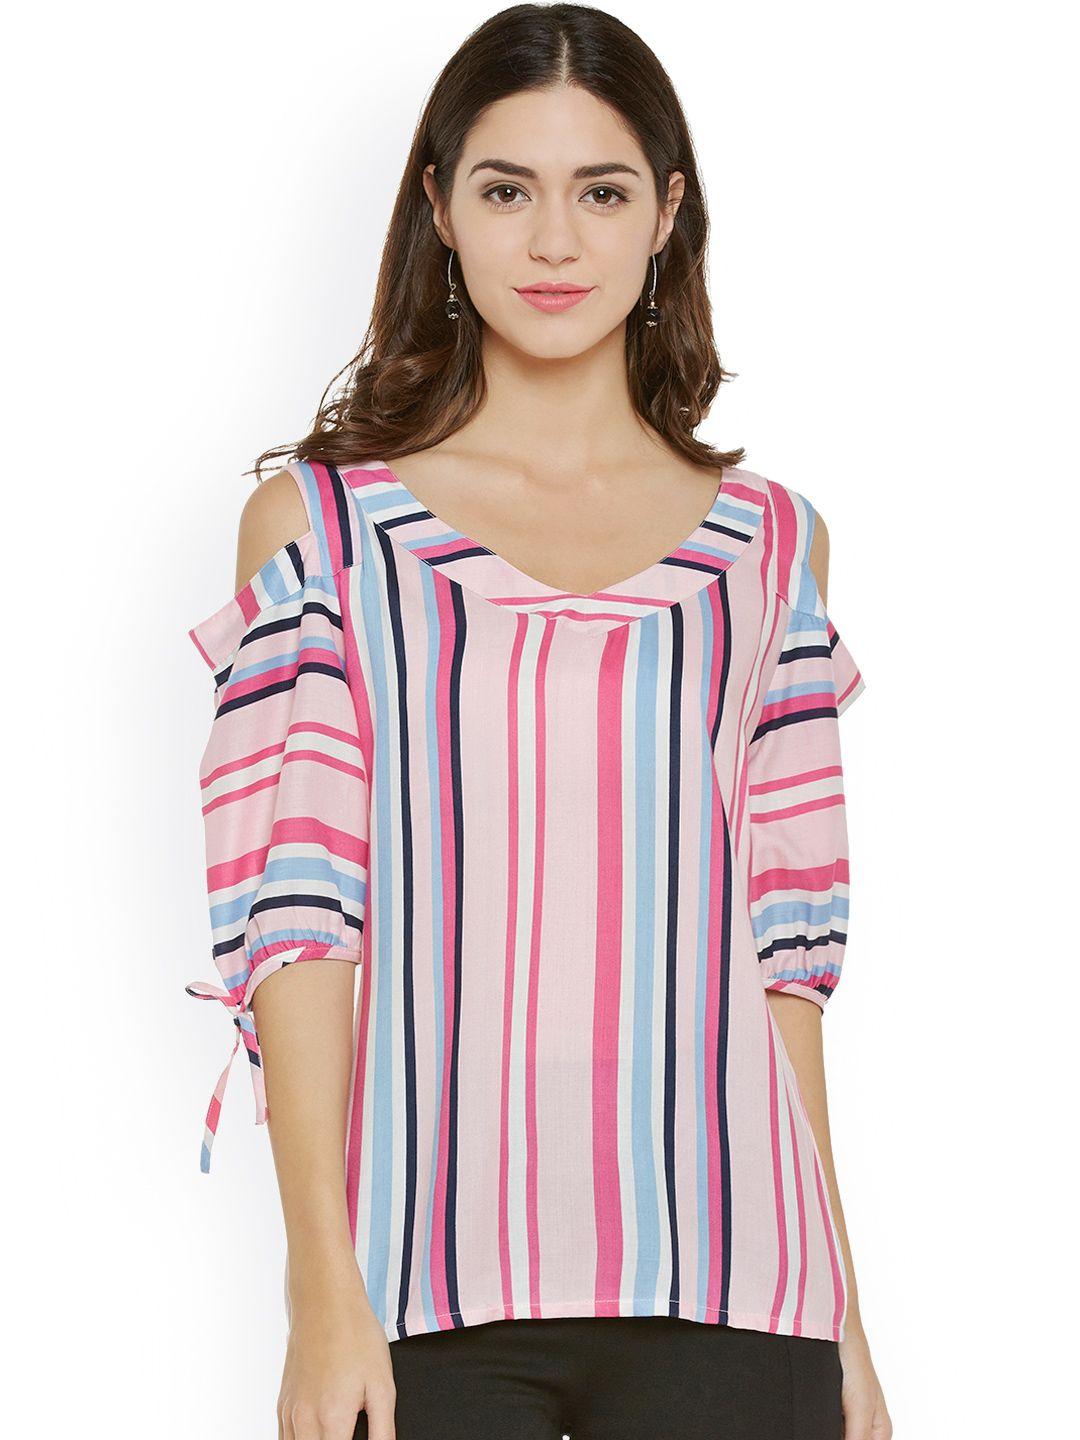 wisstler women pink & white striped top